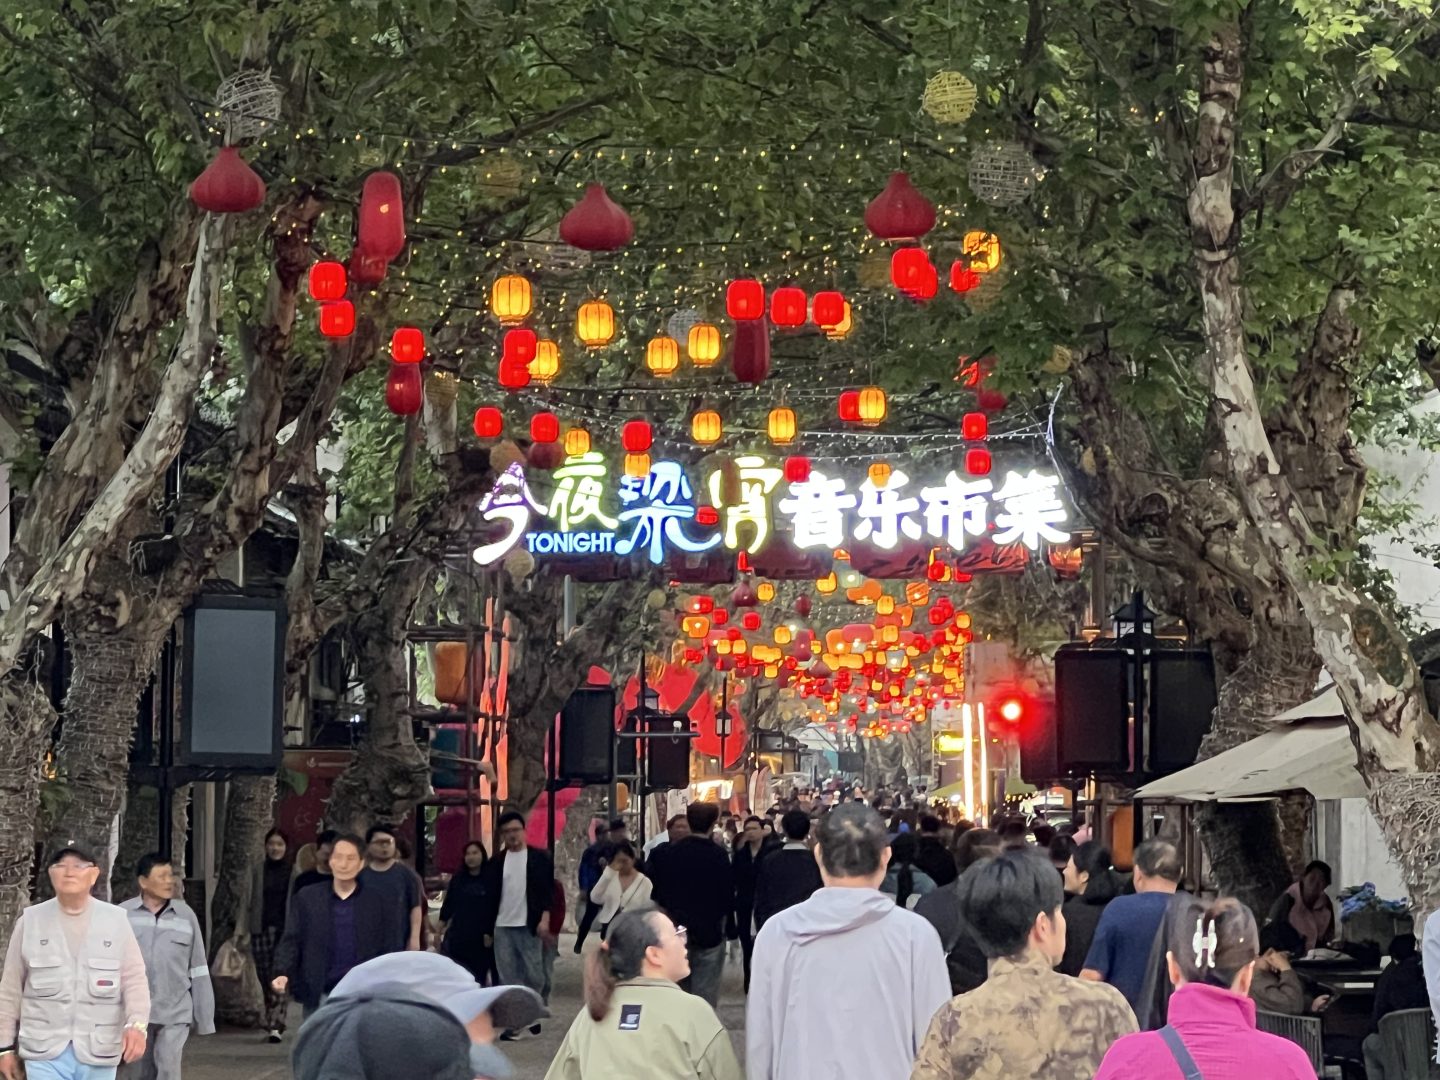 Un via di una città cinese affollata di persone con decori e lanterne